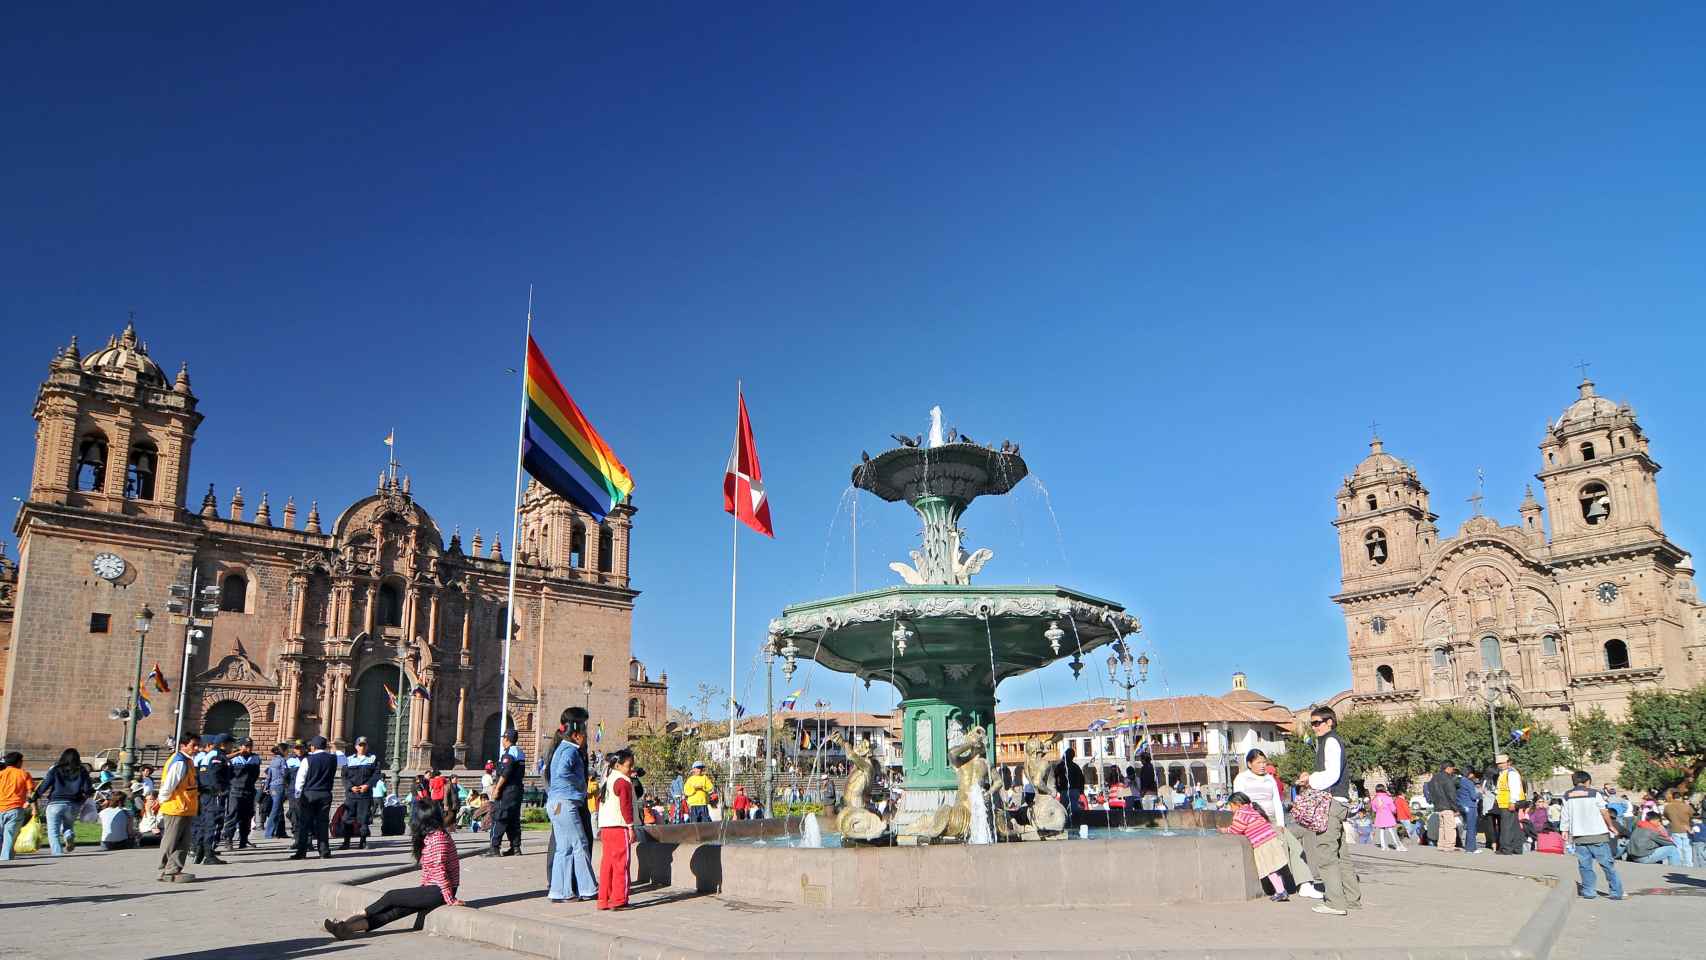 La plaza de armas de Cuzco.